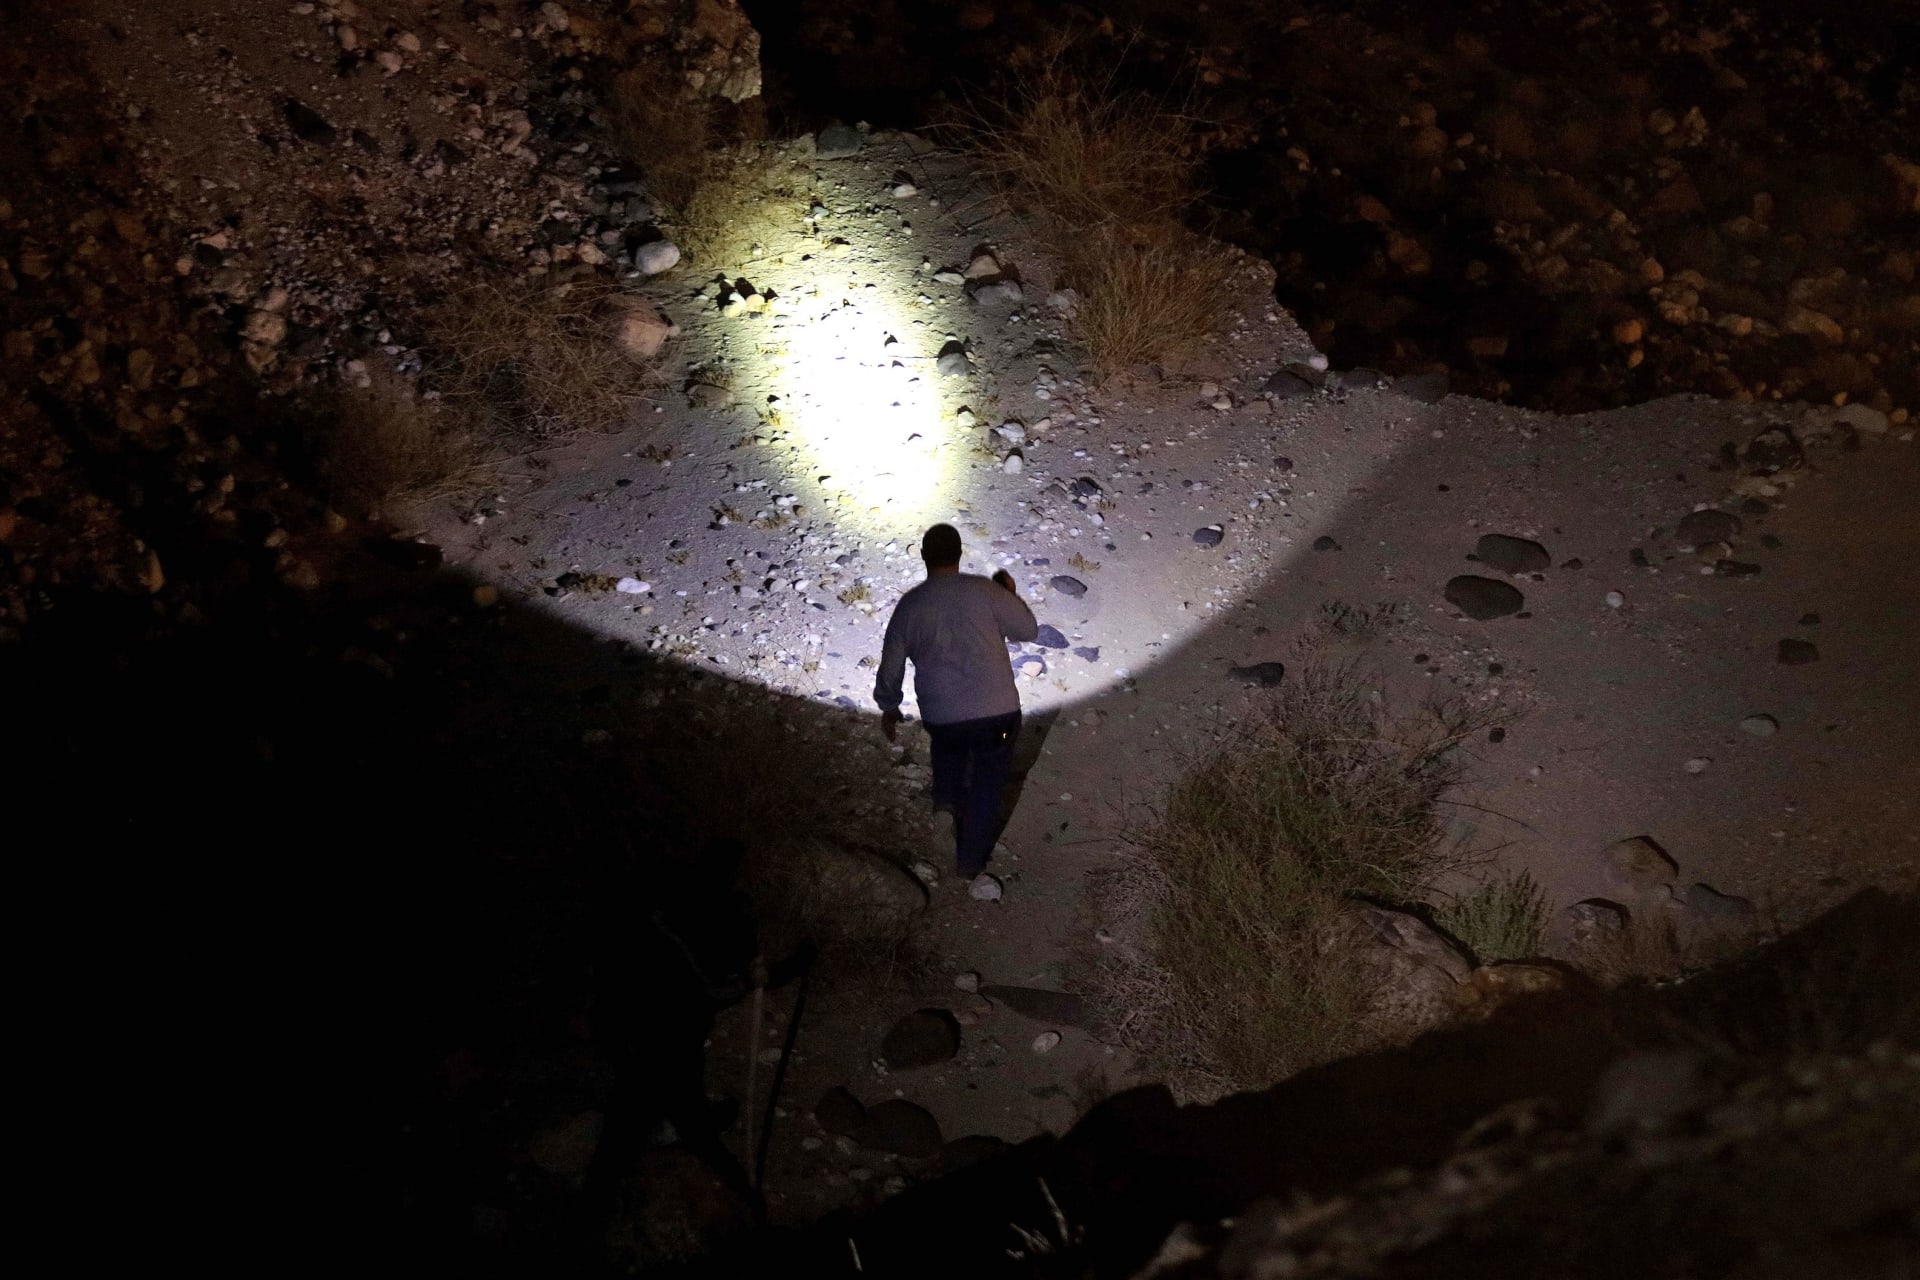  الأردن: تحديد هوية طفلة "البحر الميت" المفقودة بعد التباس بين جثتين أخريين